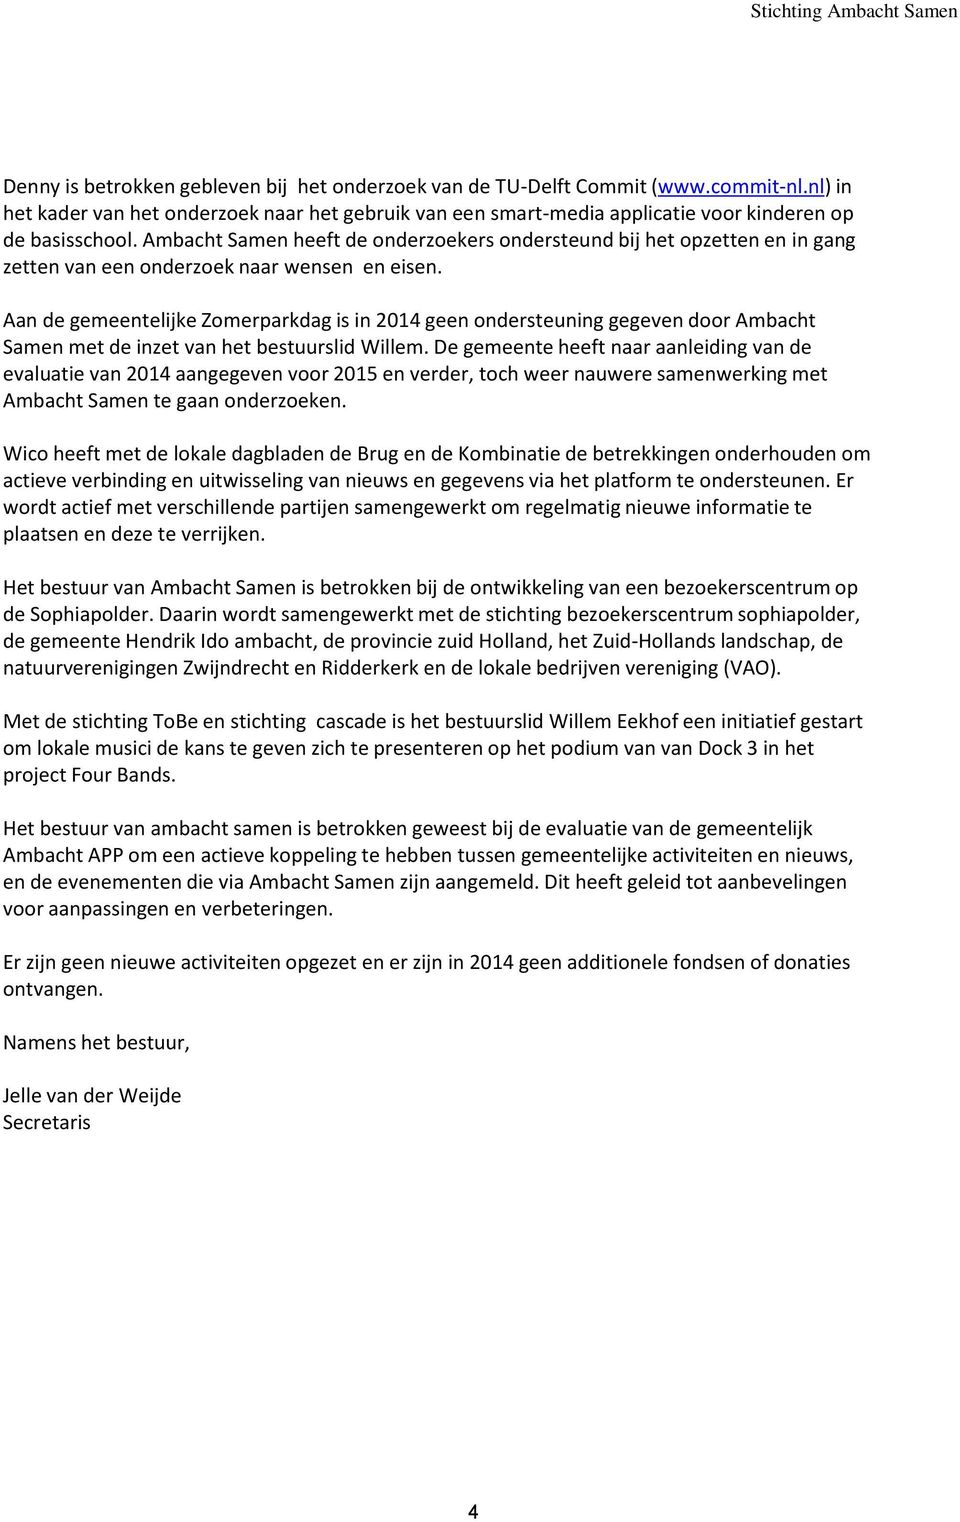 Aan de gemeentelijke Zomerparkdag is in 2014 geen ondersteuning gegeven door Ambacht Samen met de inzet van het bestuurslid Willem.